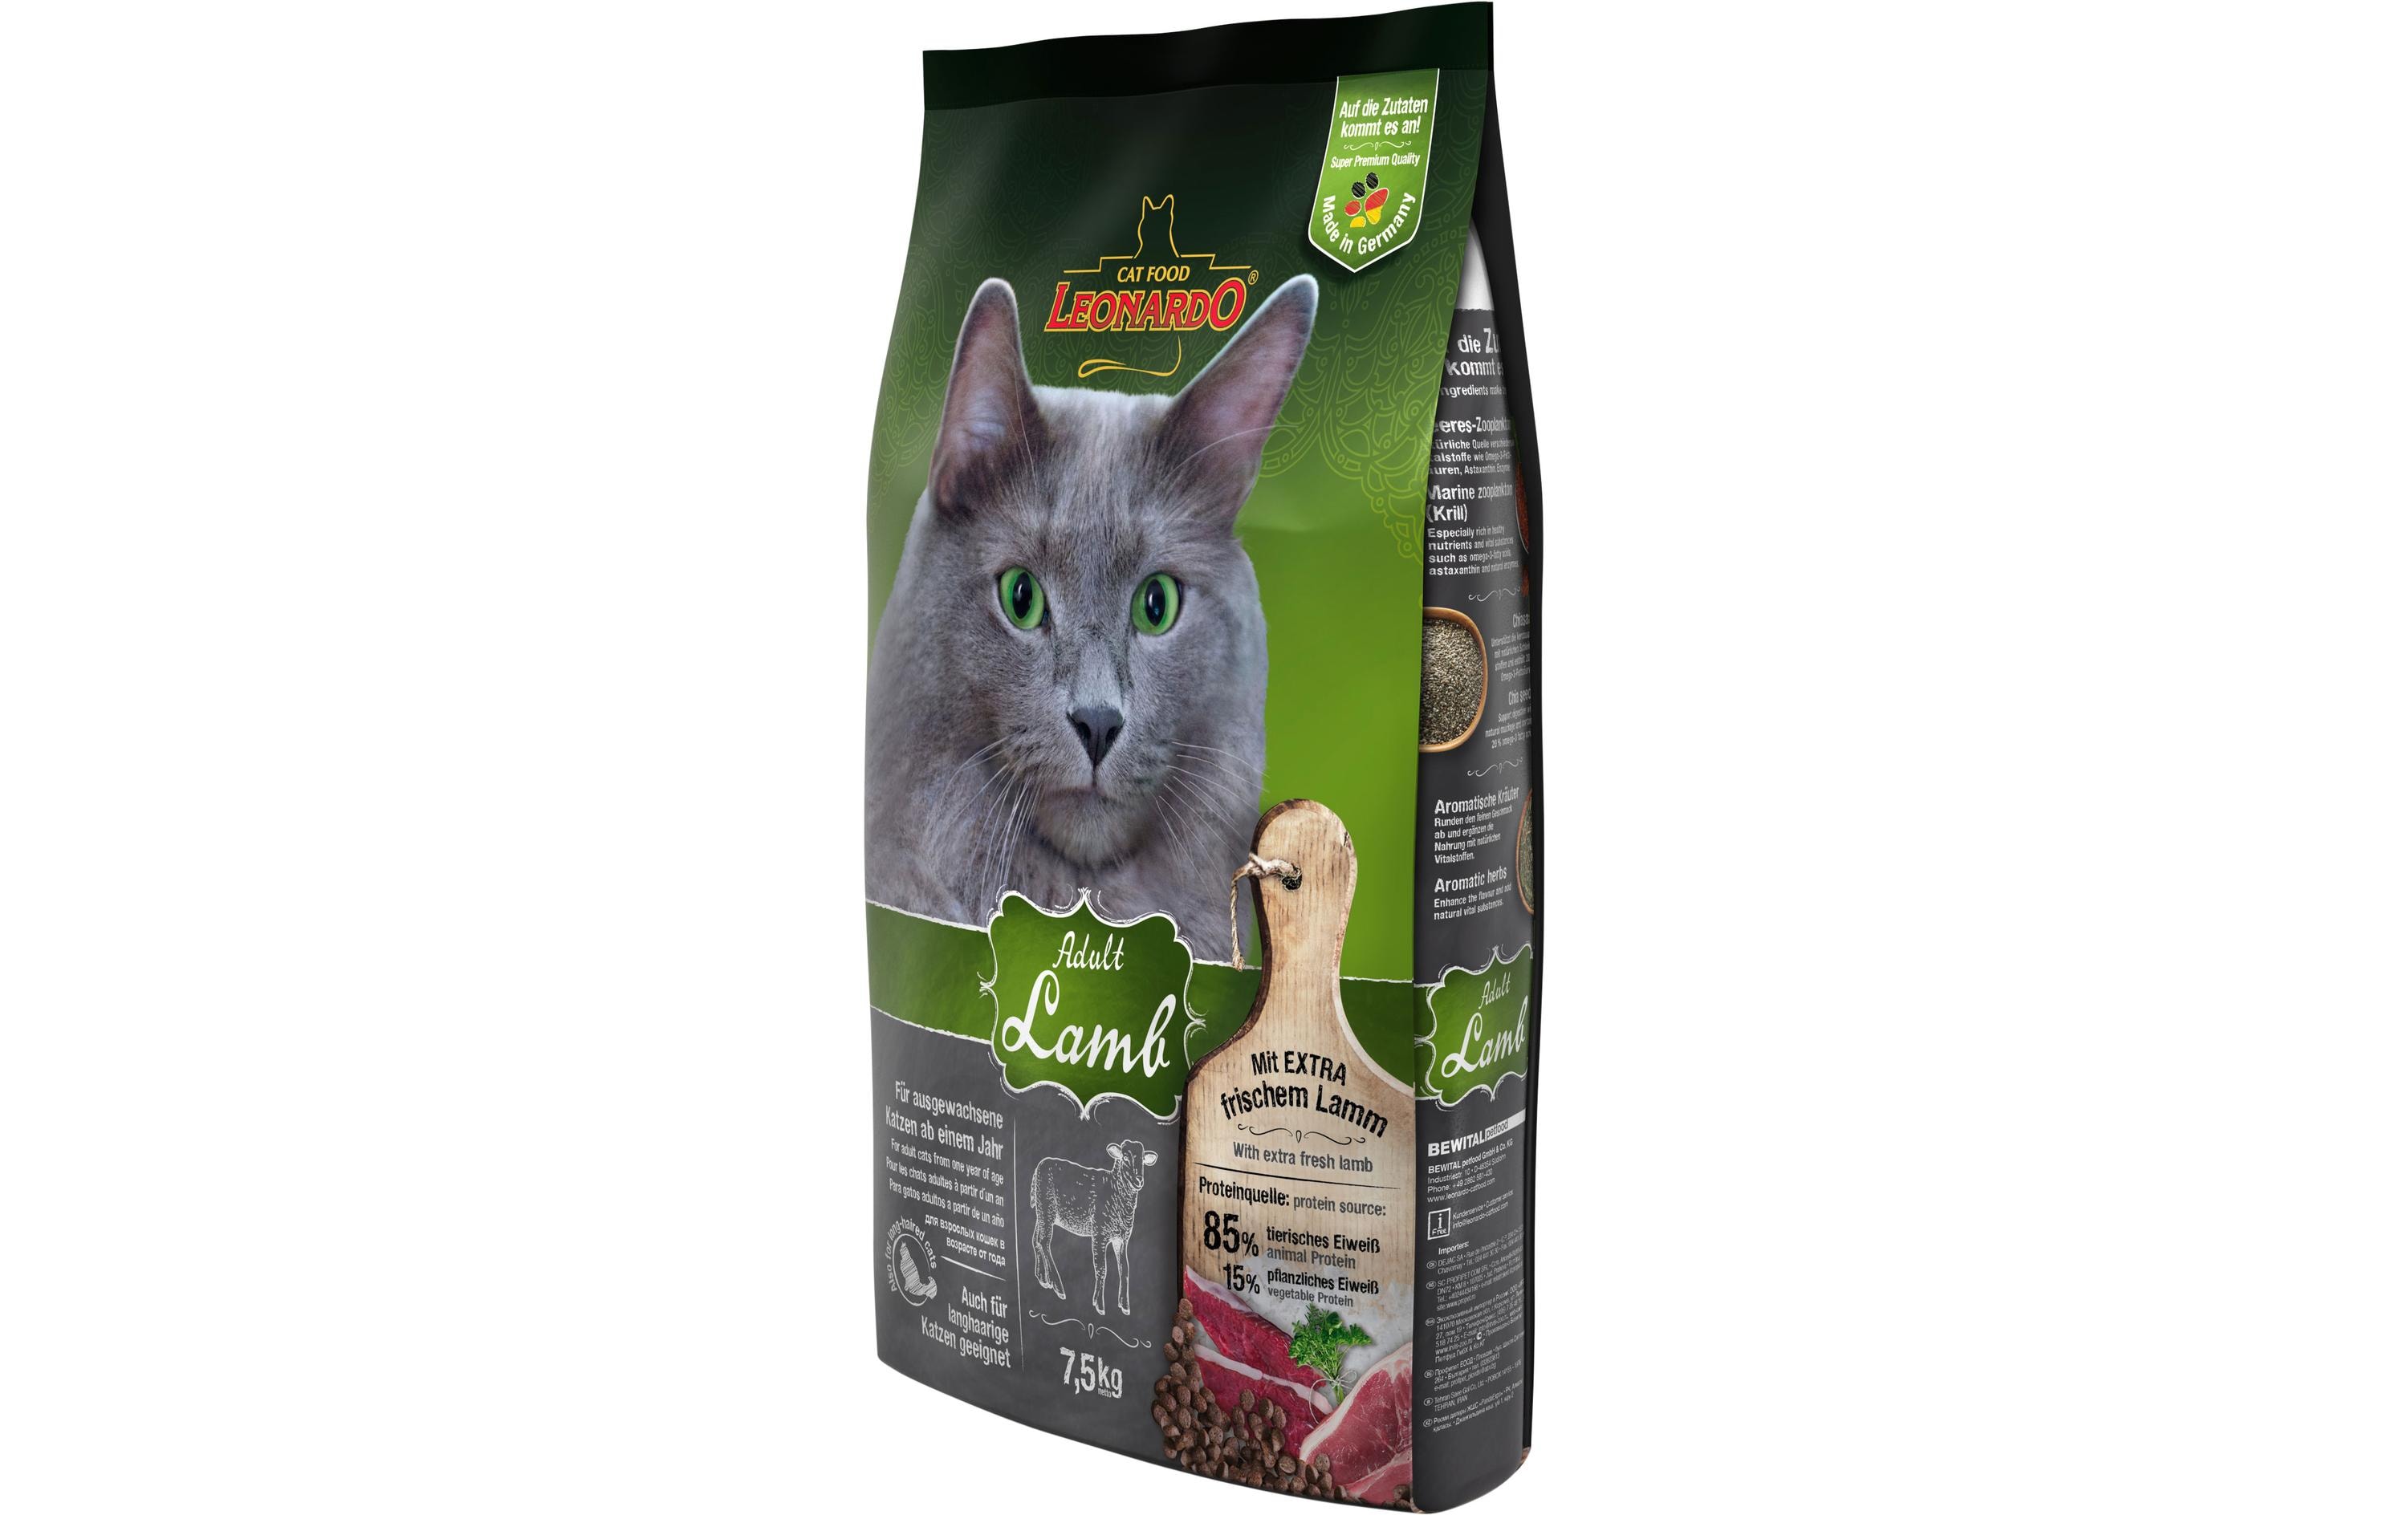 Leonardo Cat Food Trockenfutter Adult Lamm, 7.5 kg